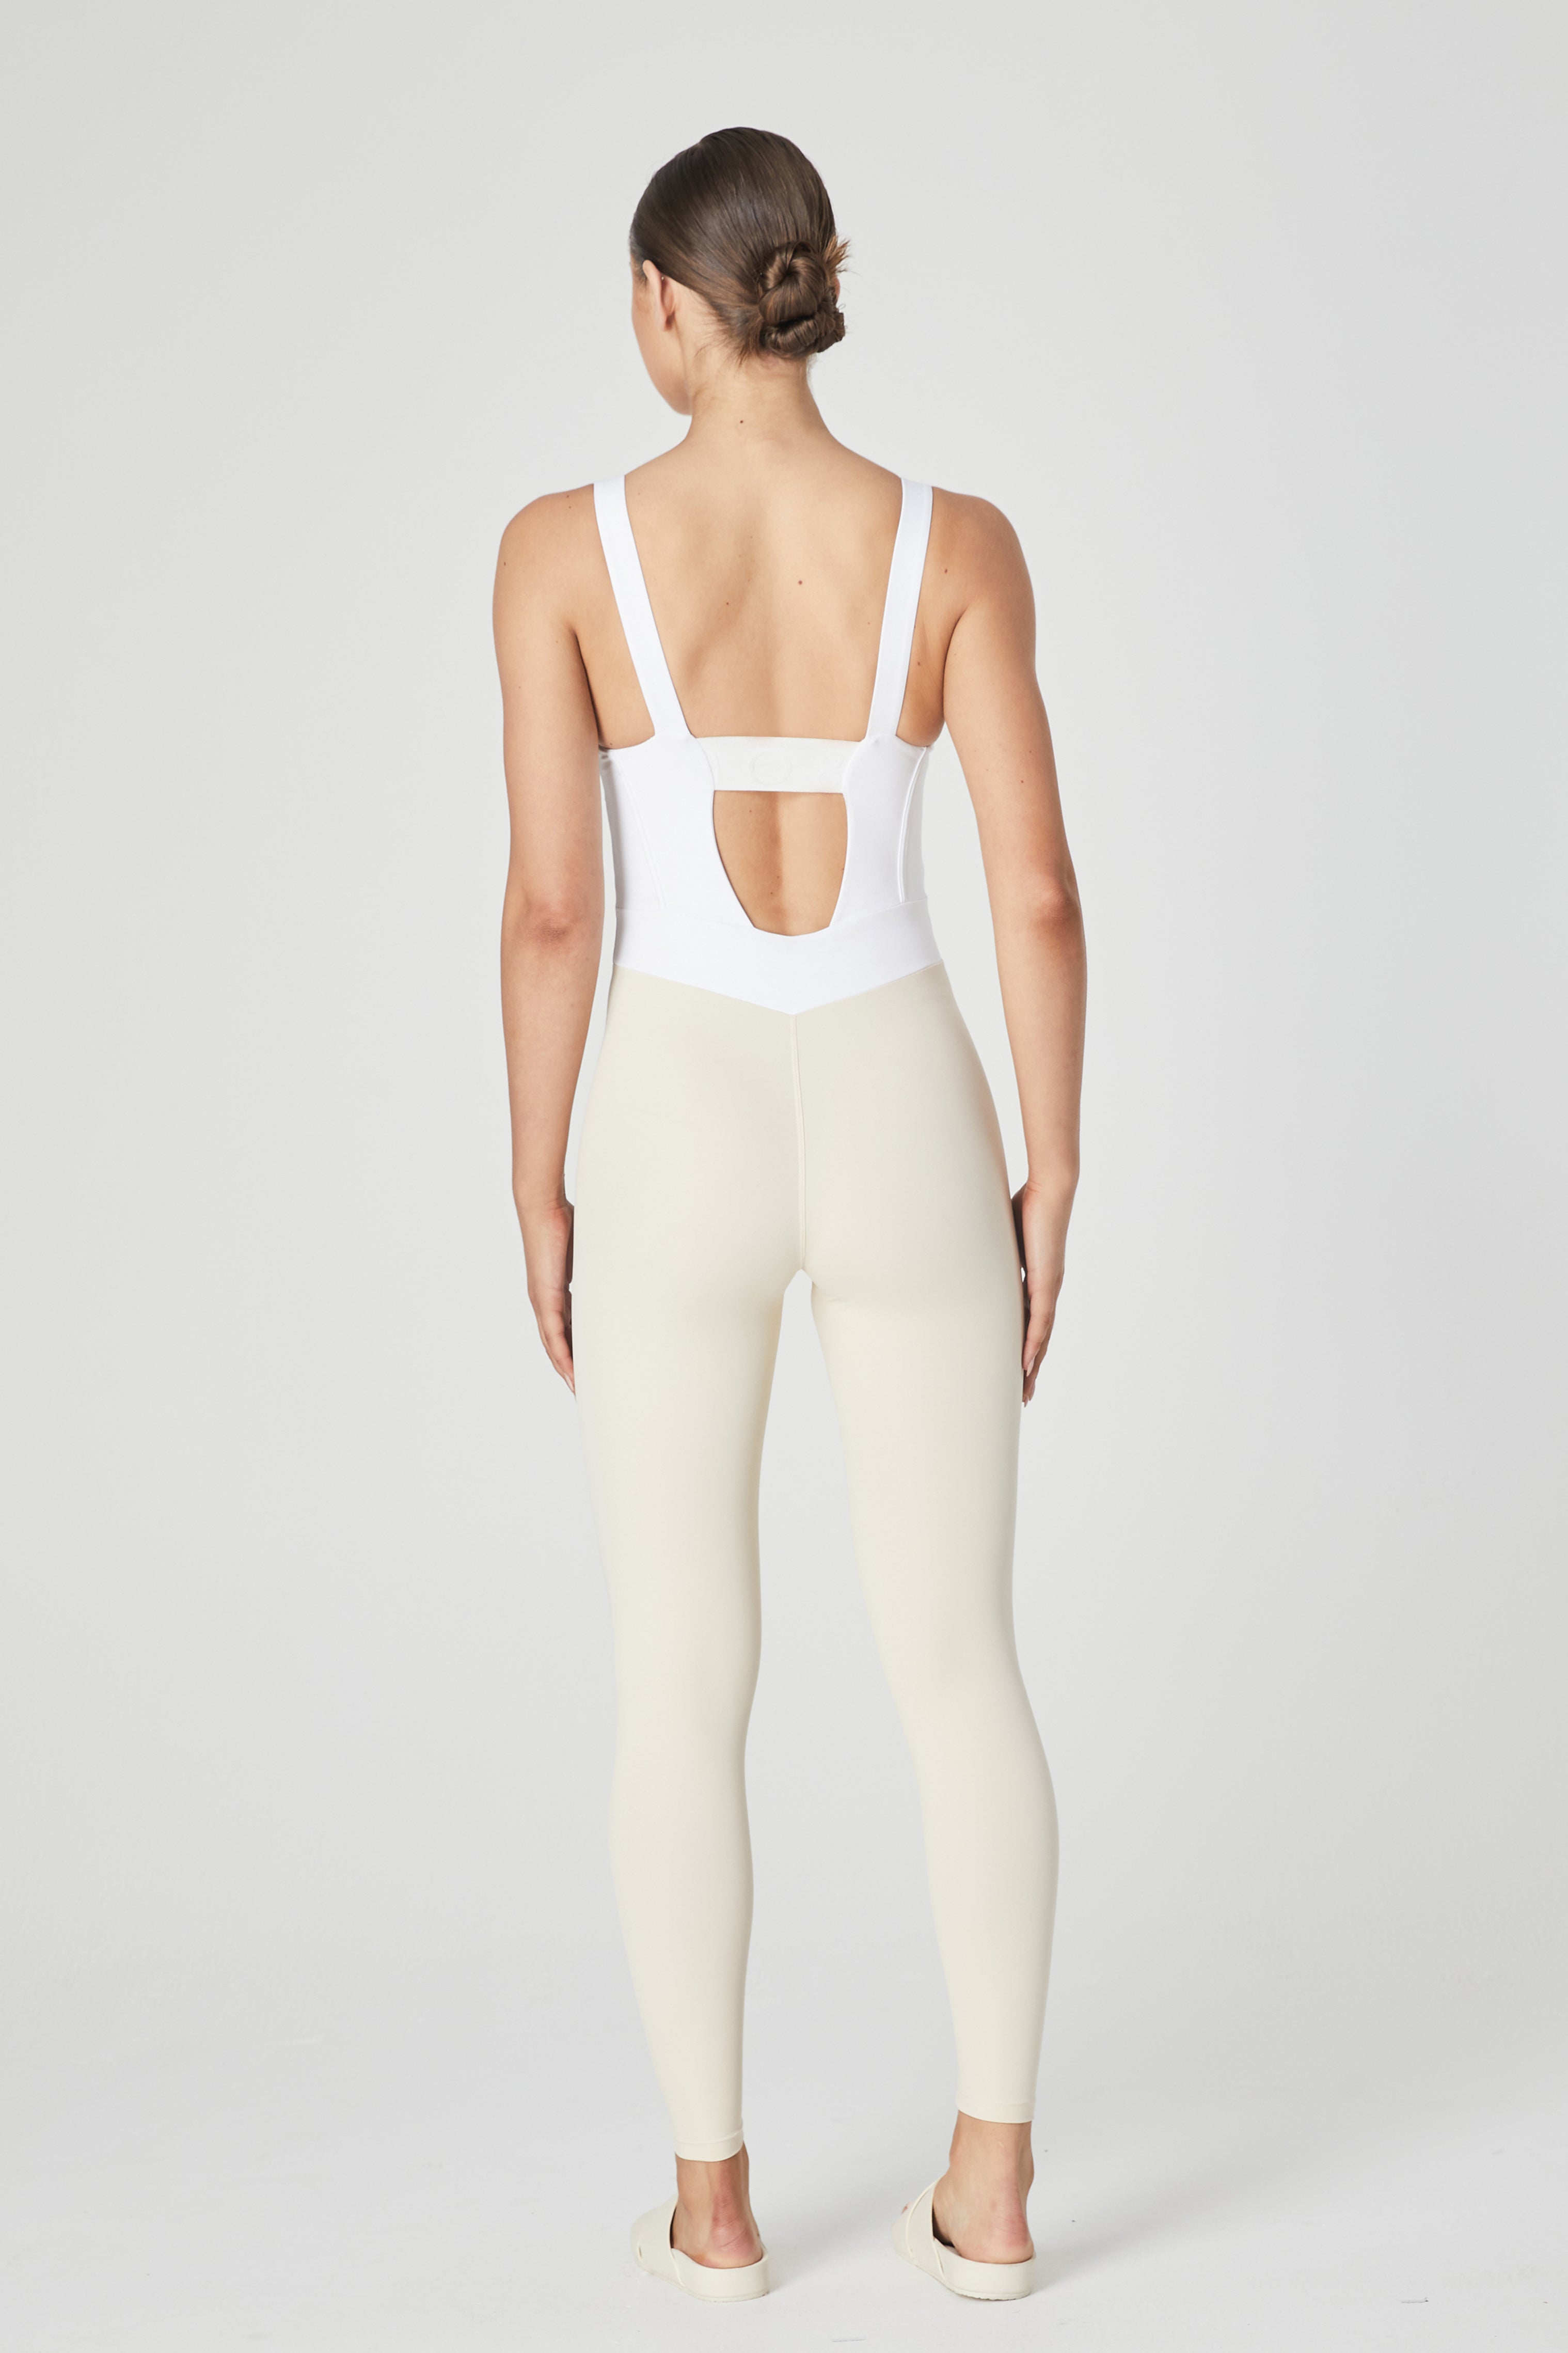 Ithaca Bustier Bodysuit - White/Sand